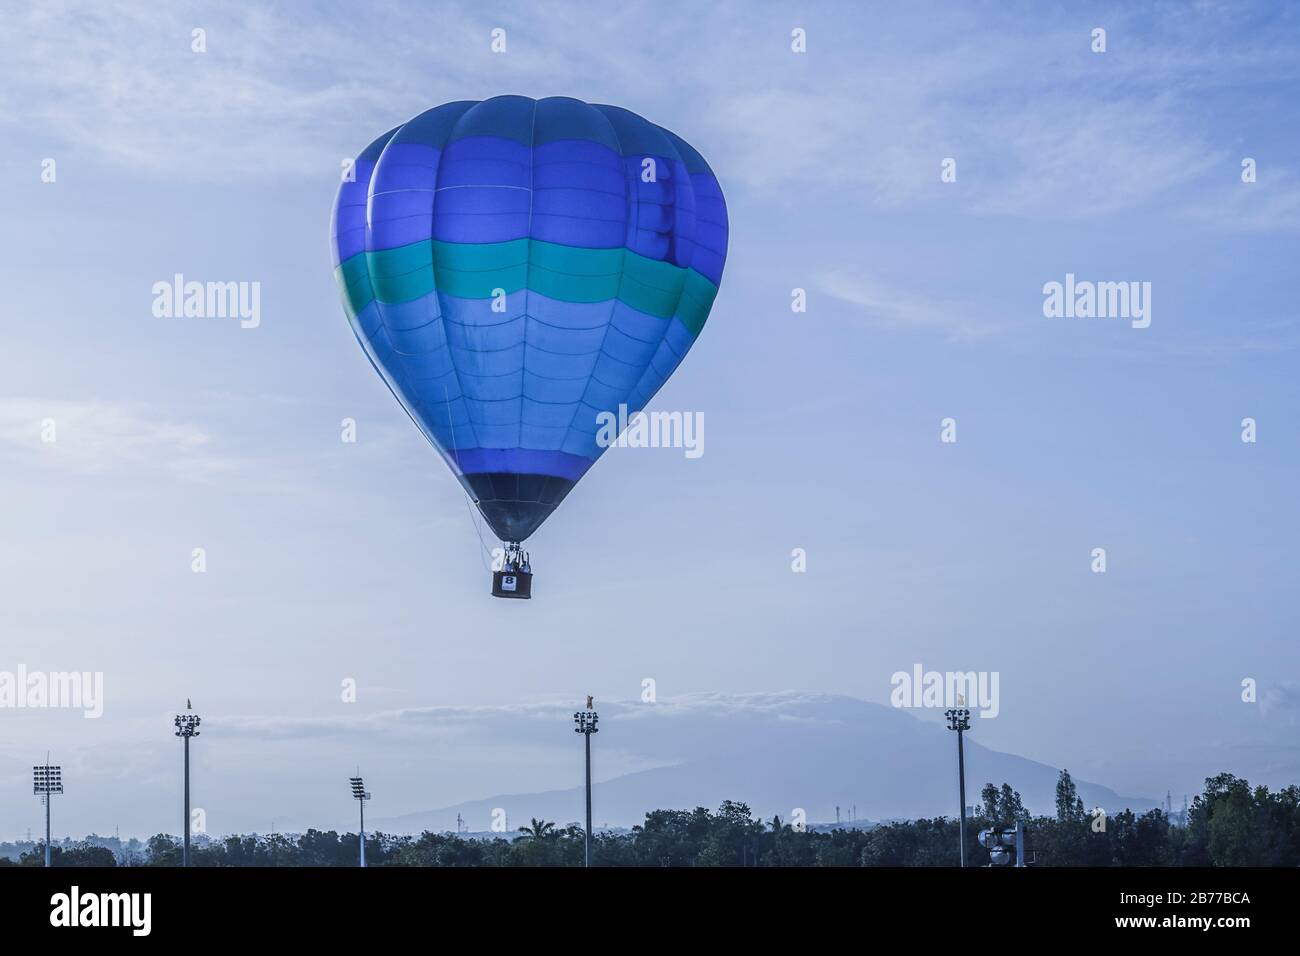 Un festival di mongolfiera presenta parapendio, palloncini ad aria calda e altre forme di trasporto aereo. Il lancio della mongolfiera è l'evento principale. Foto Stock